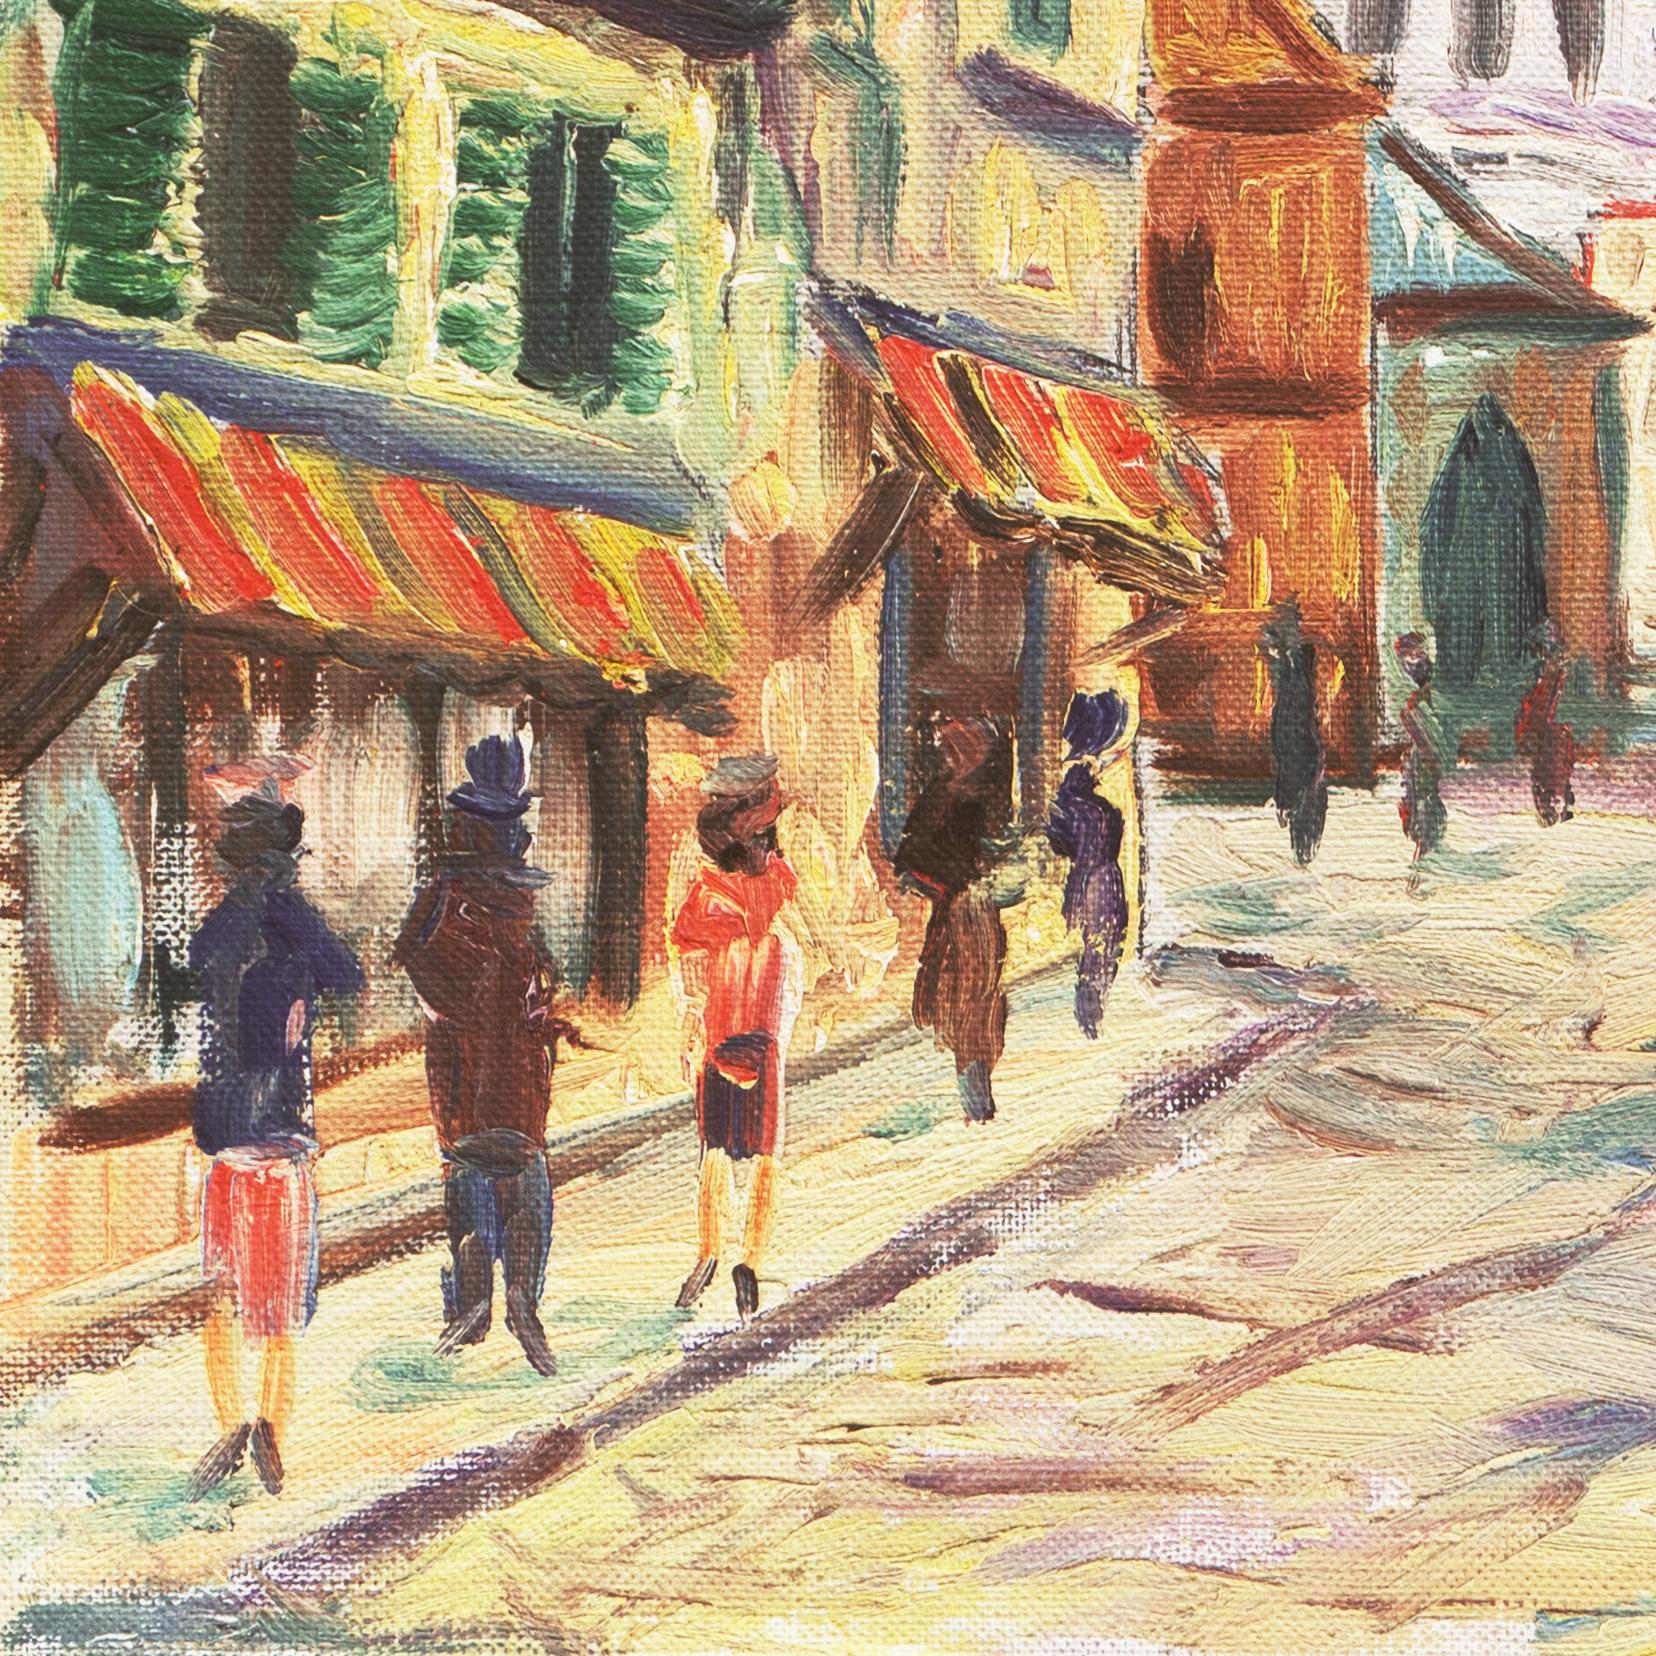 'Place du Tertre', School of Paris, Montmartre, Sacré Cœur and Lapin Agile - Post-Impressionist Painting by Rammy